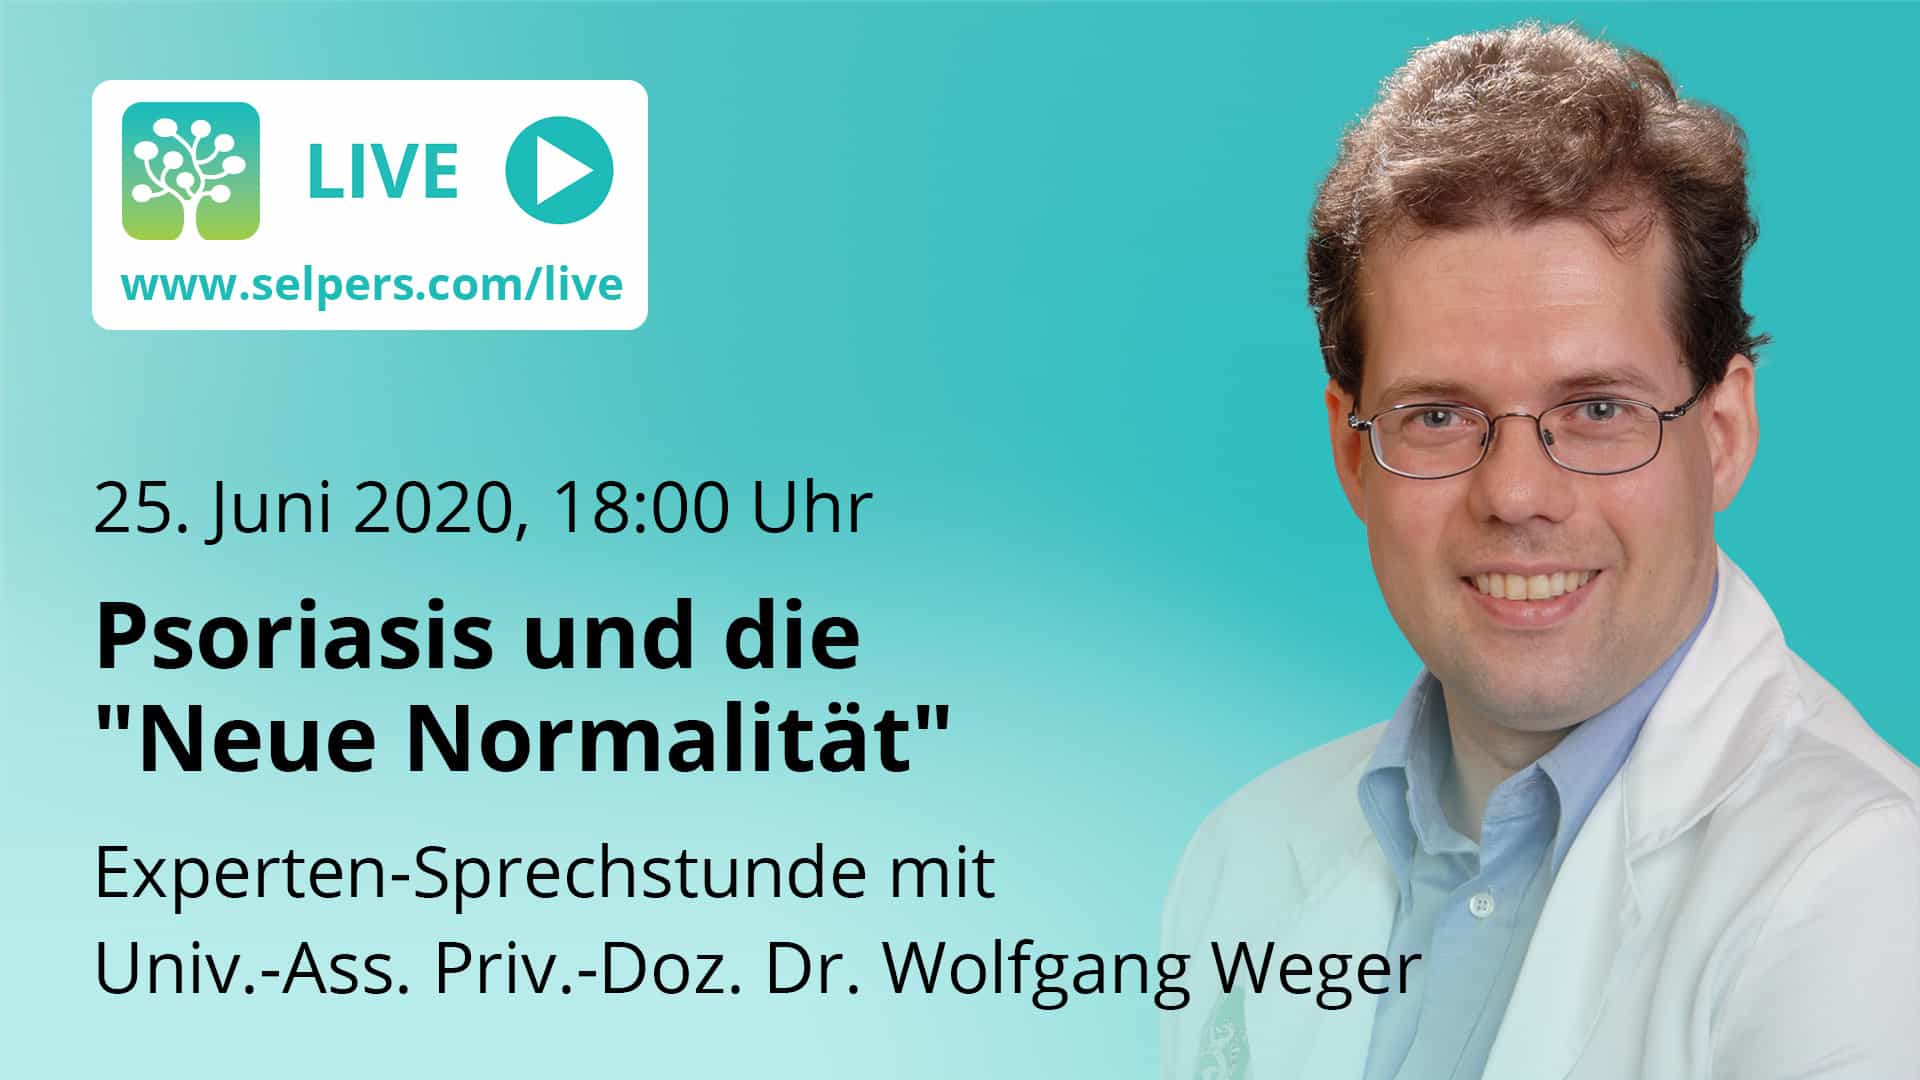 Experten-Sprechstunde: Psoriasis und die Neue Normalität mit Univ.-Ass. Priv.-Doz. Dr. Wolfgang Weger